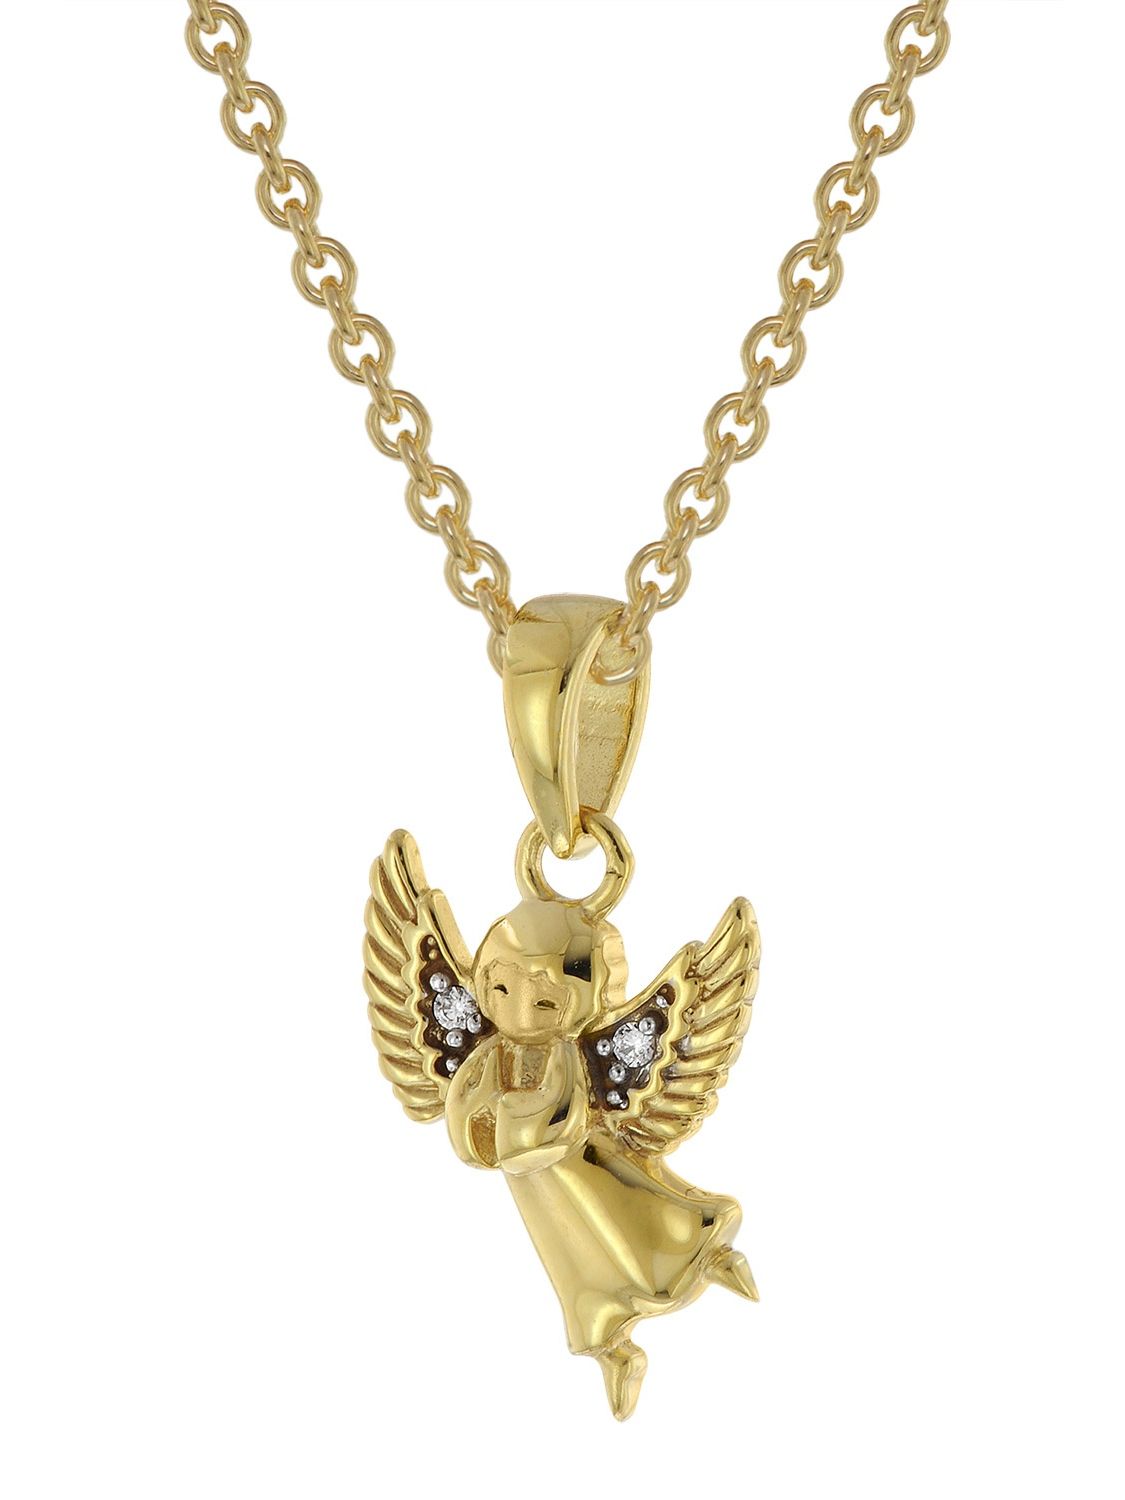 trendor Engel Anhänger Gold vergoldete • 51144 8K Silber-Halskette / uhrcenter + 333